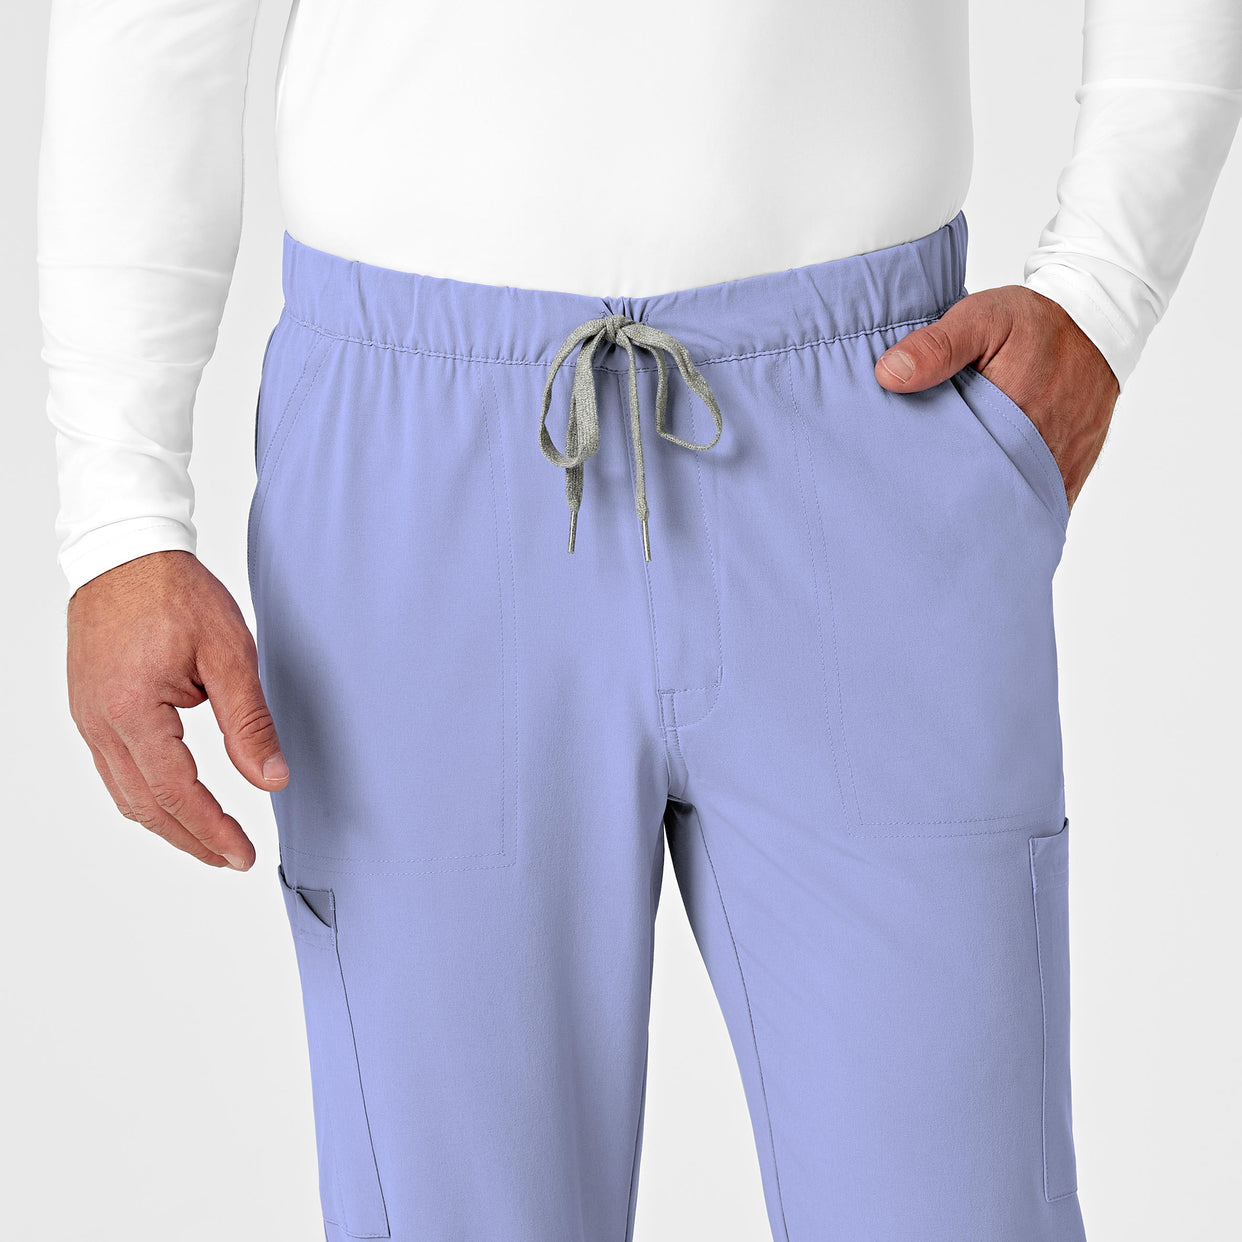 mens scrub jogger pant - ceil blue waistband